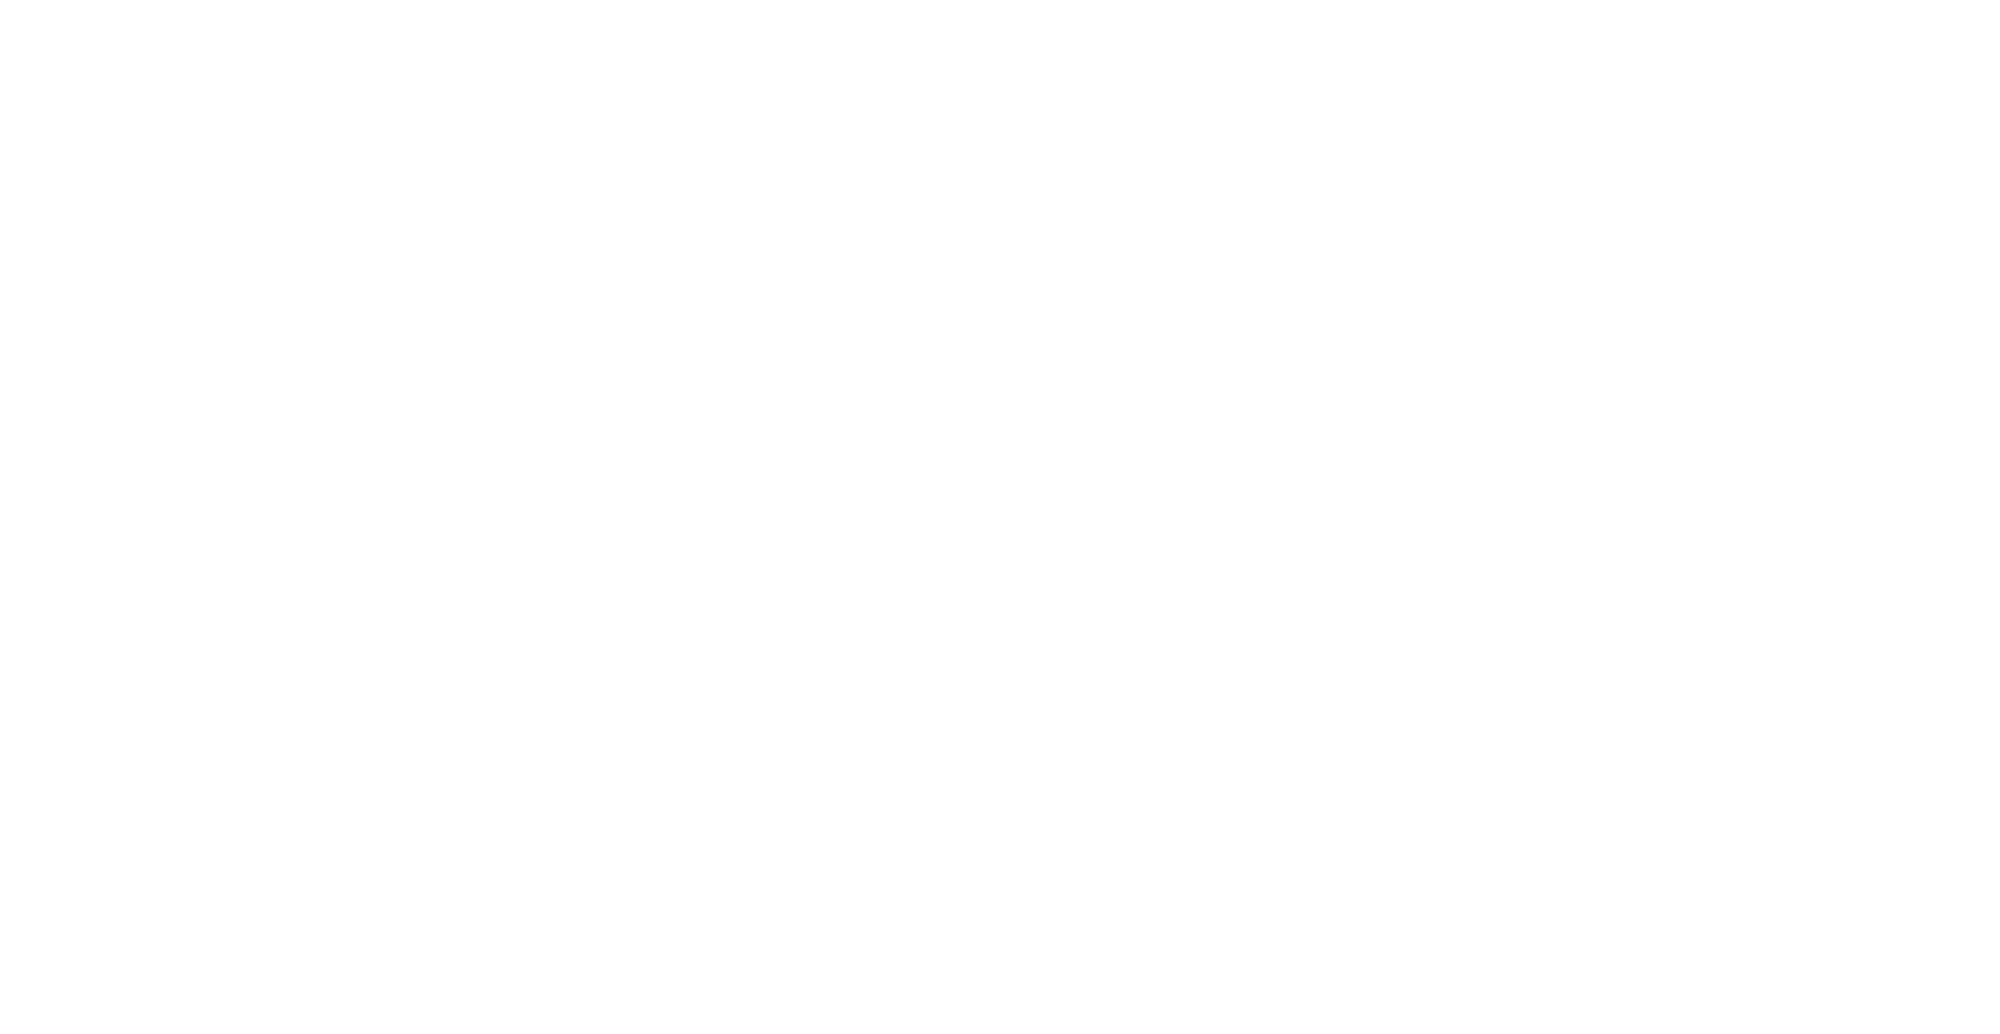 VIVERE FORTIS -logo-white.png